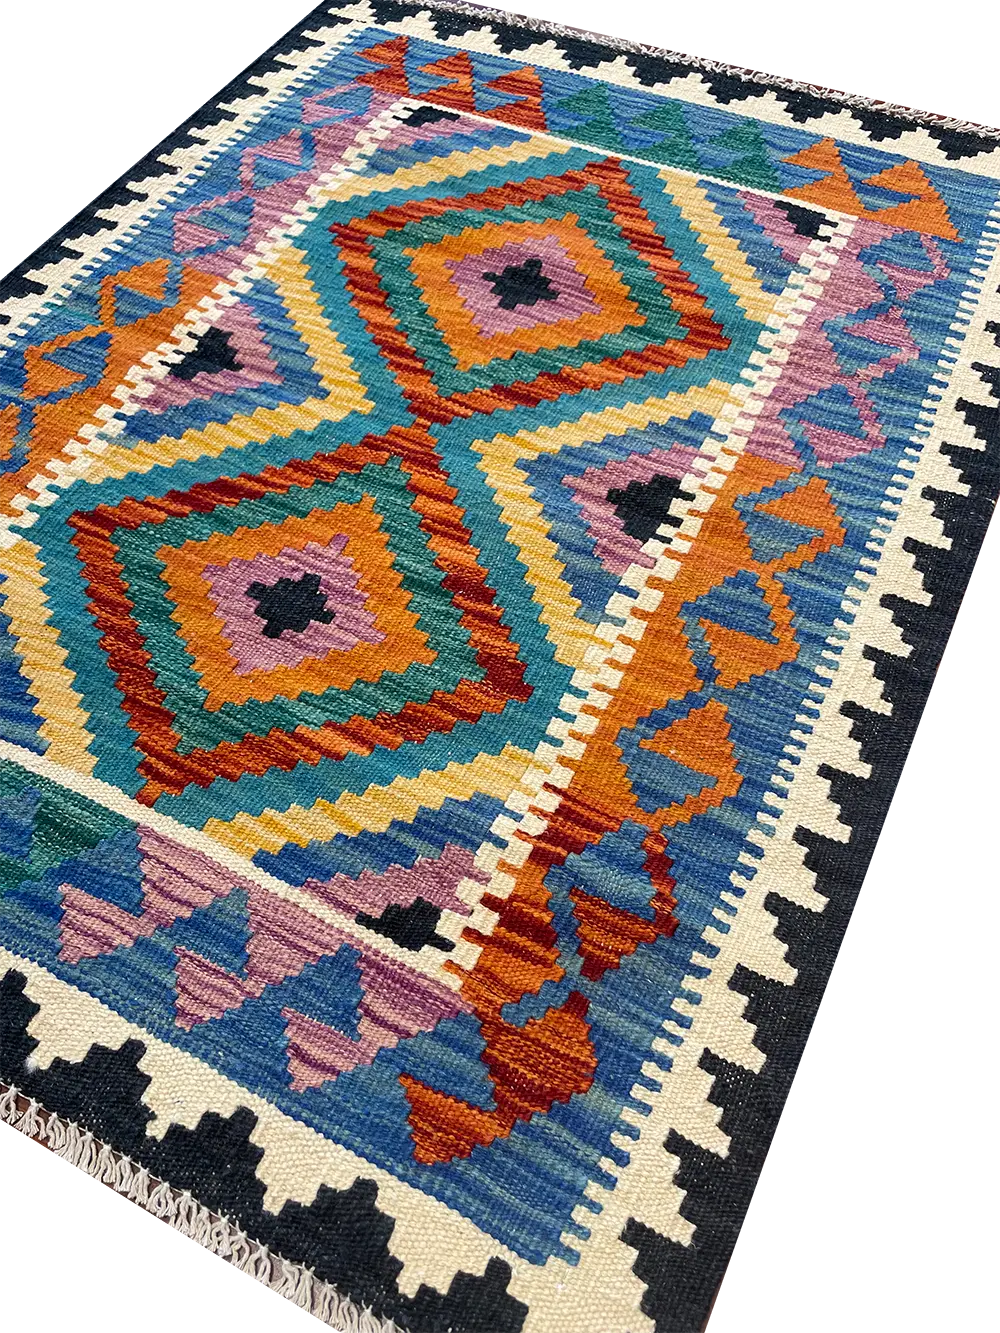 Vibrant Handmade Flatweave Kilim Rug 2'10" x 3'9"